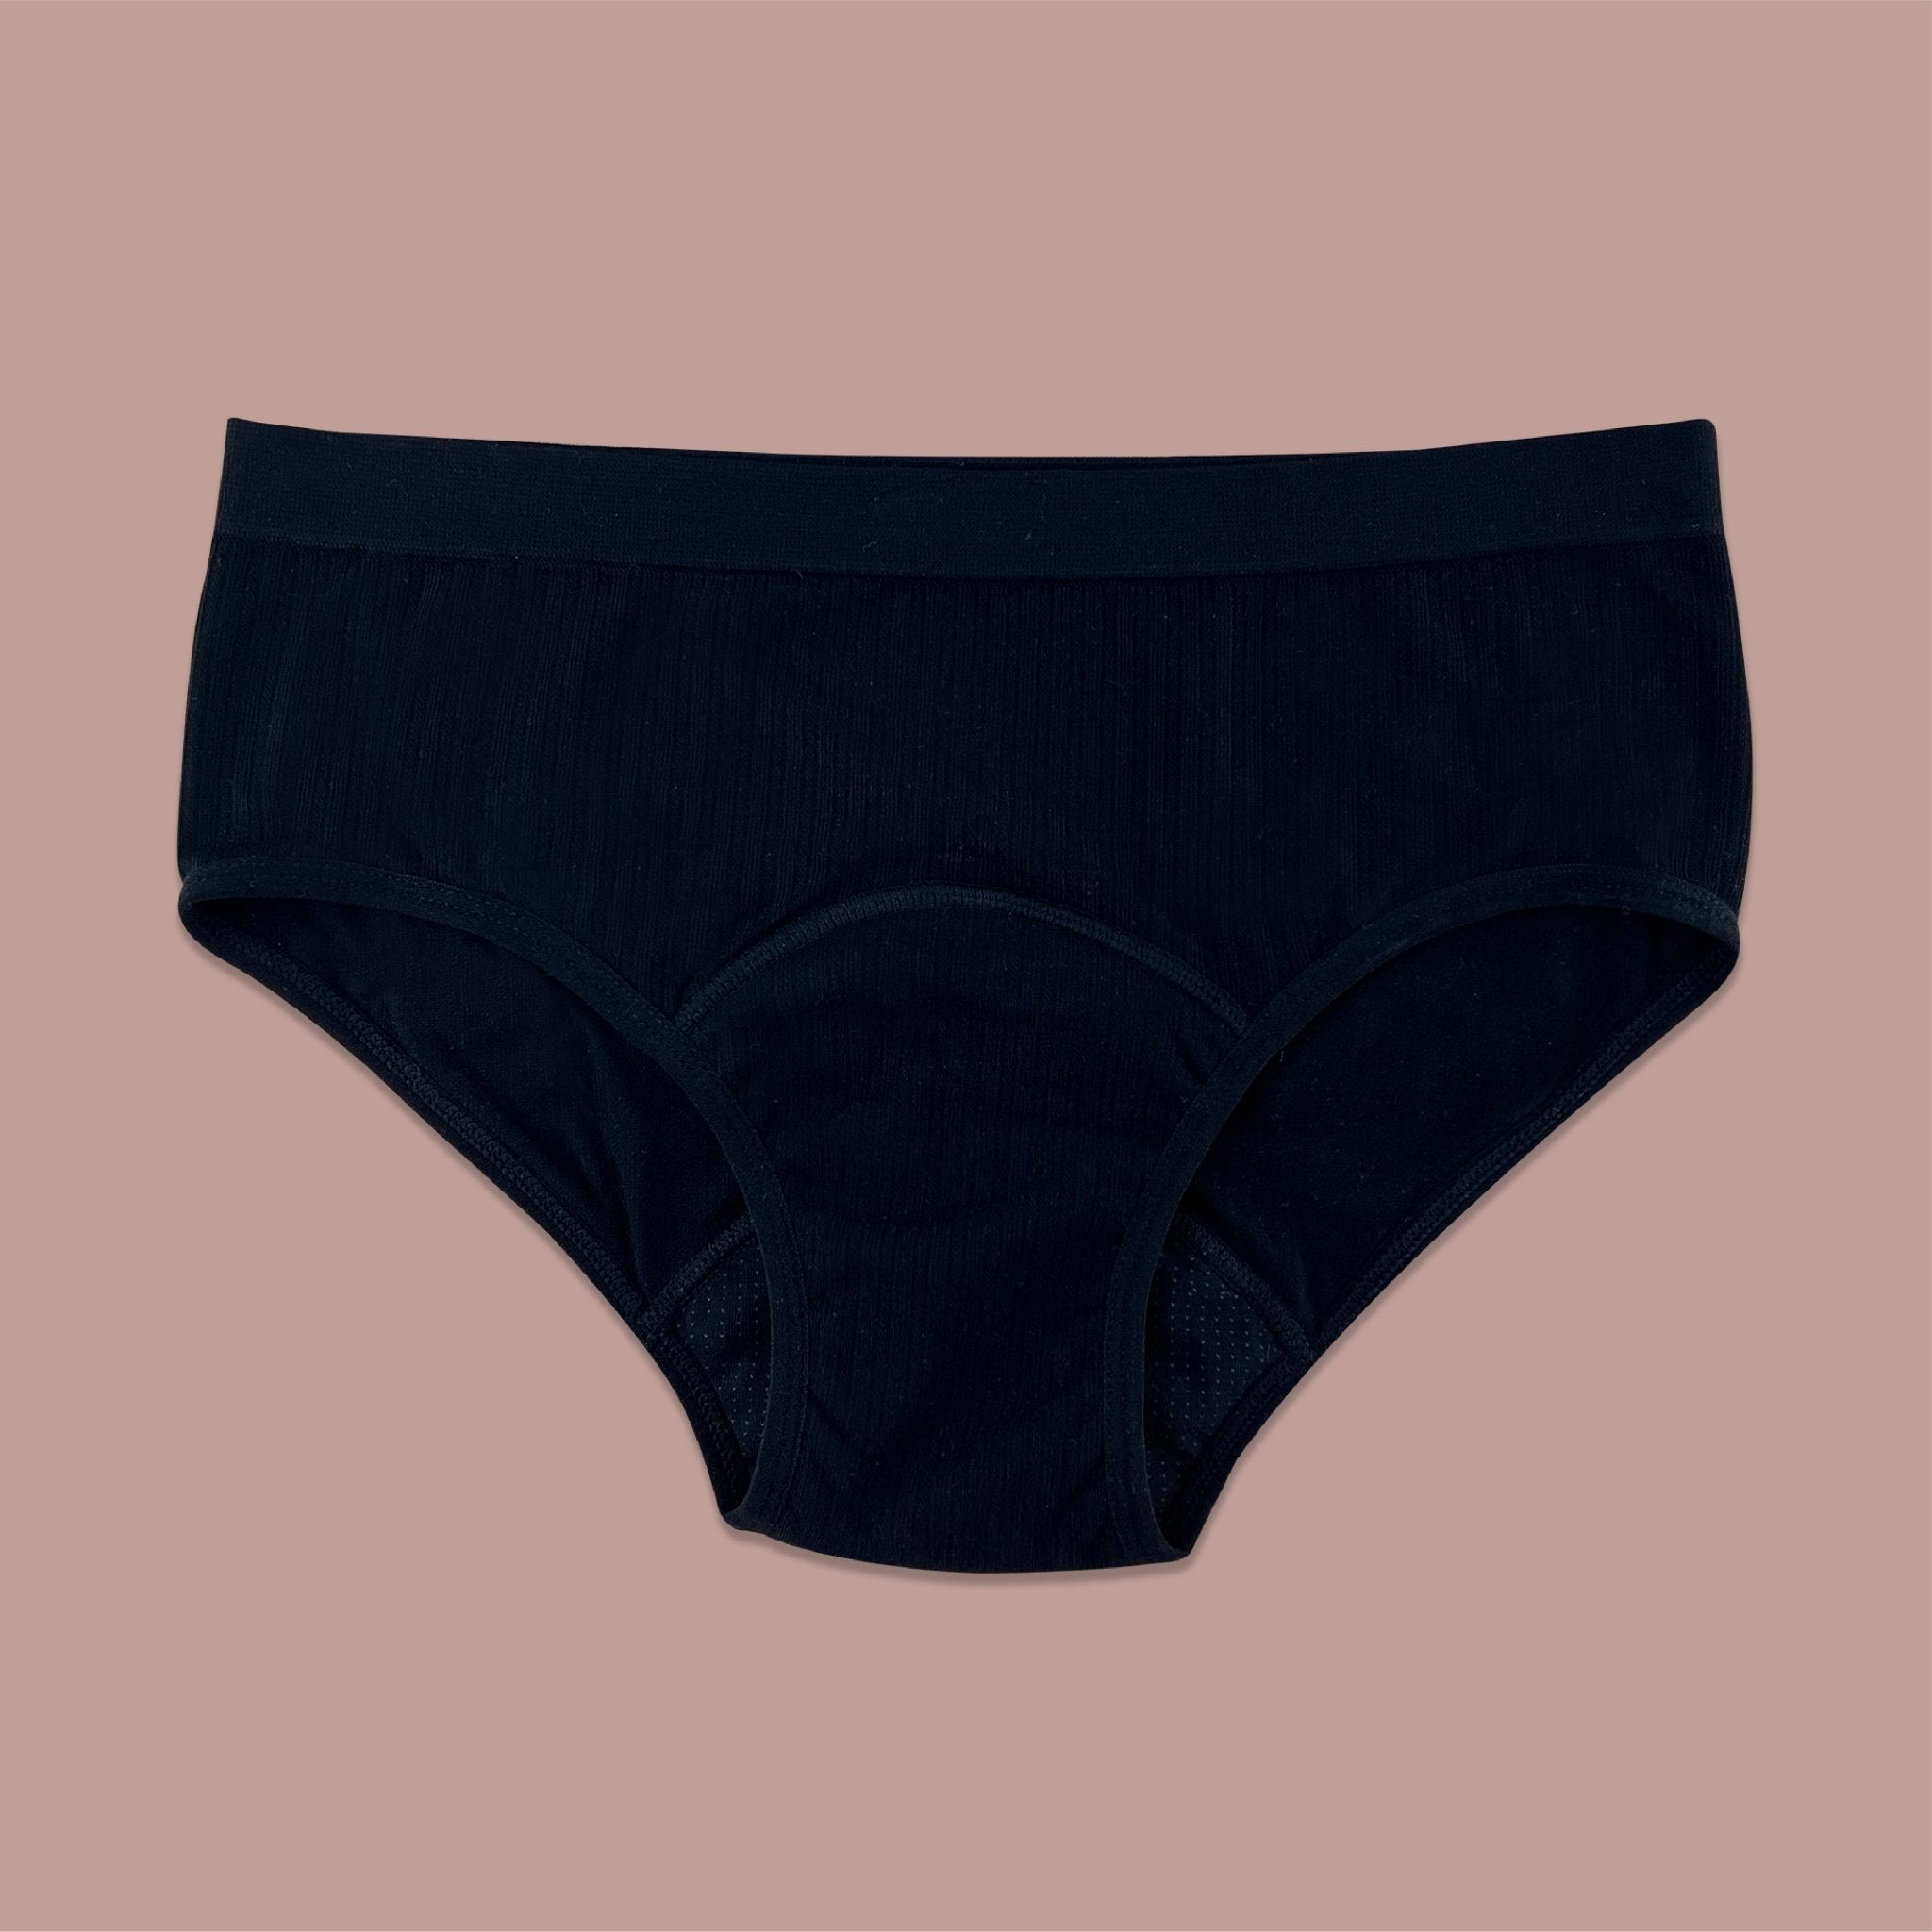 What is the BEST period underwear?🩸